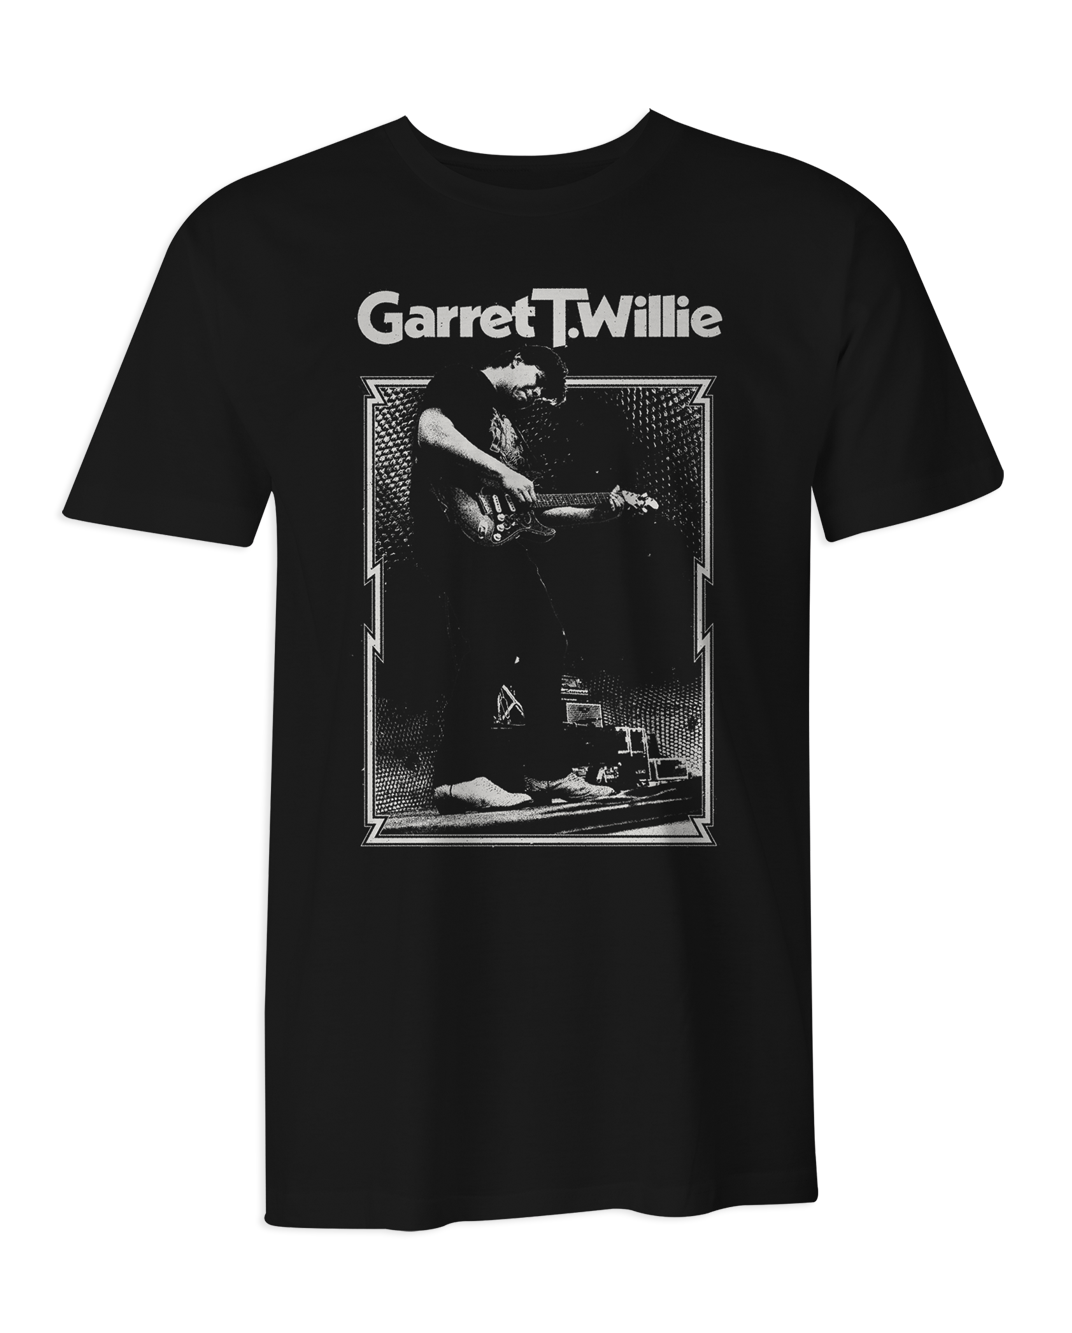 Garret T. Willie T-Shirt